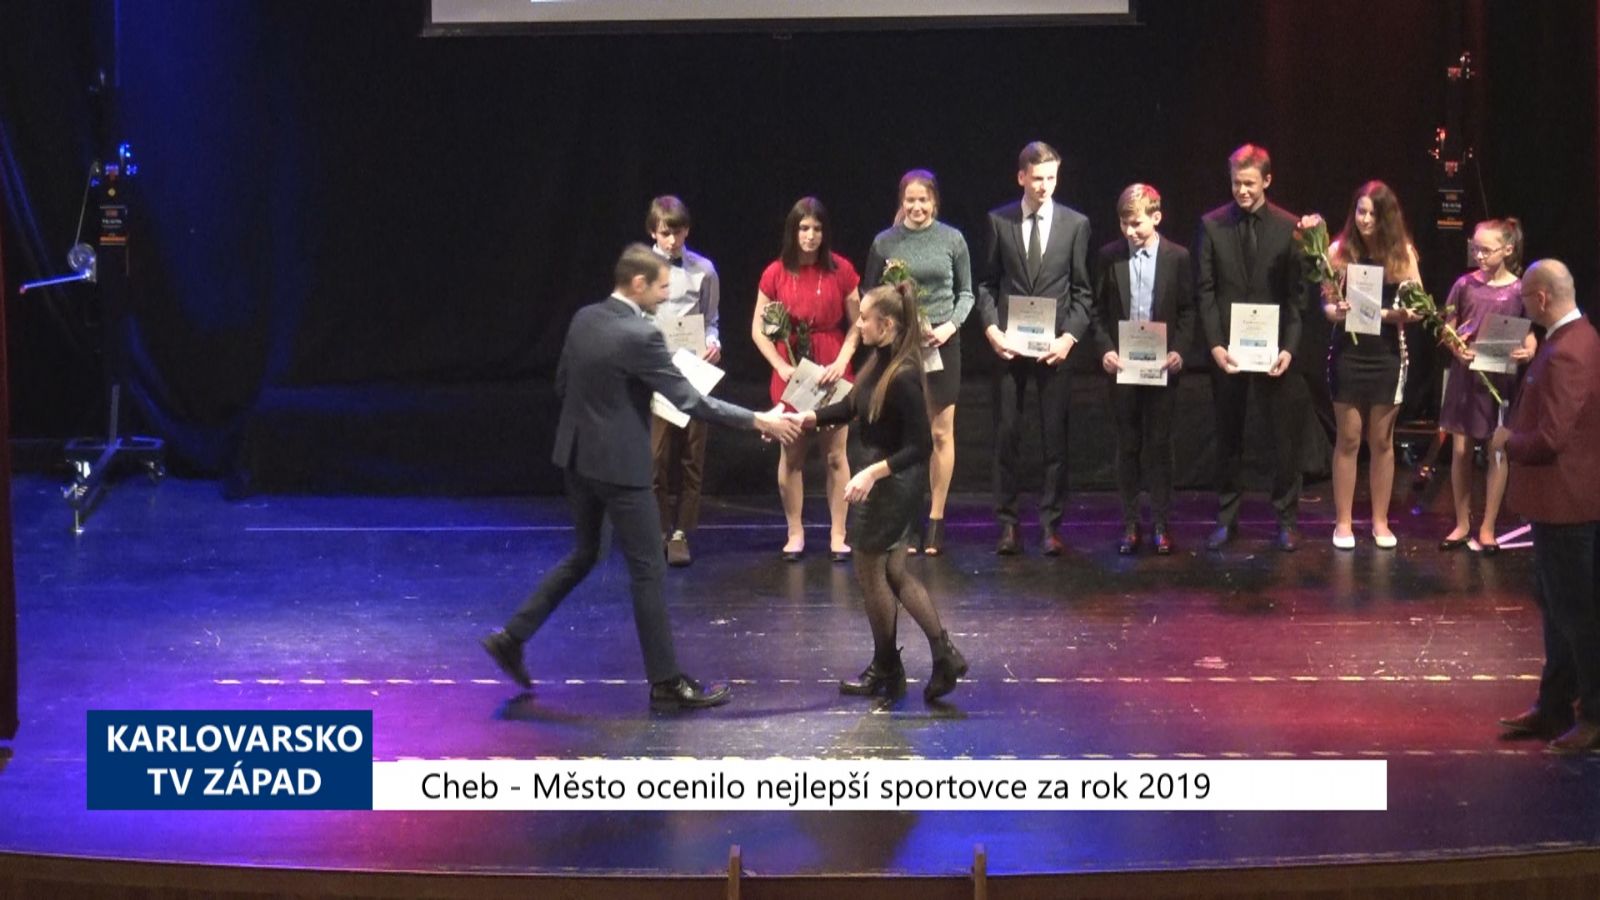 Cheb: Město ocenilo nejlepší sportovce za rok 2019 (TV Západ)